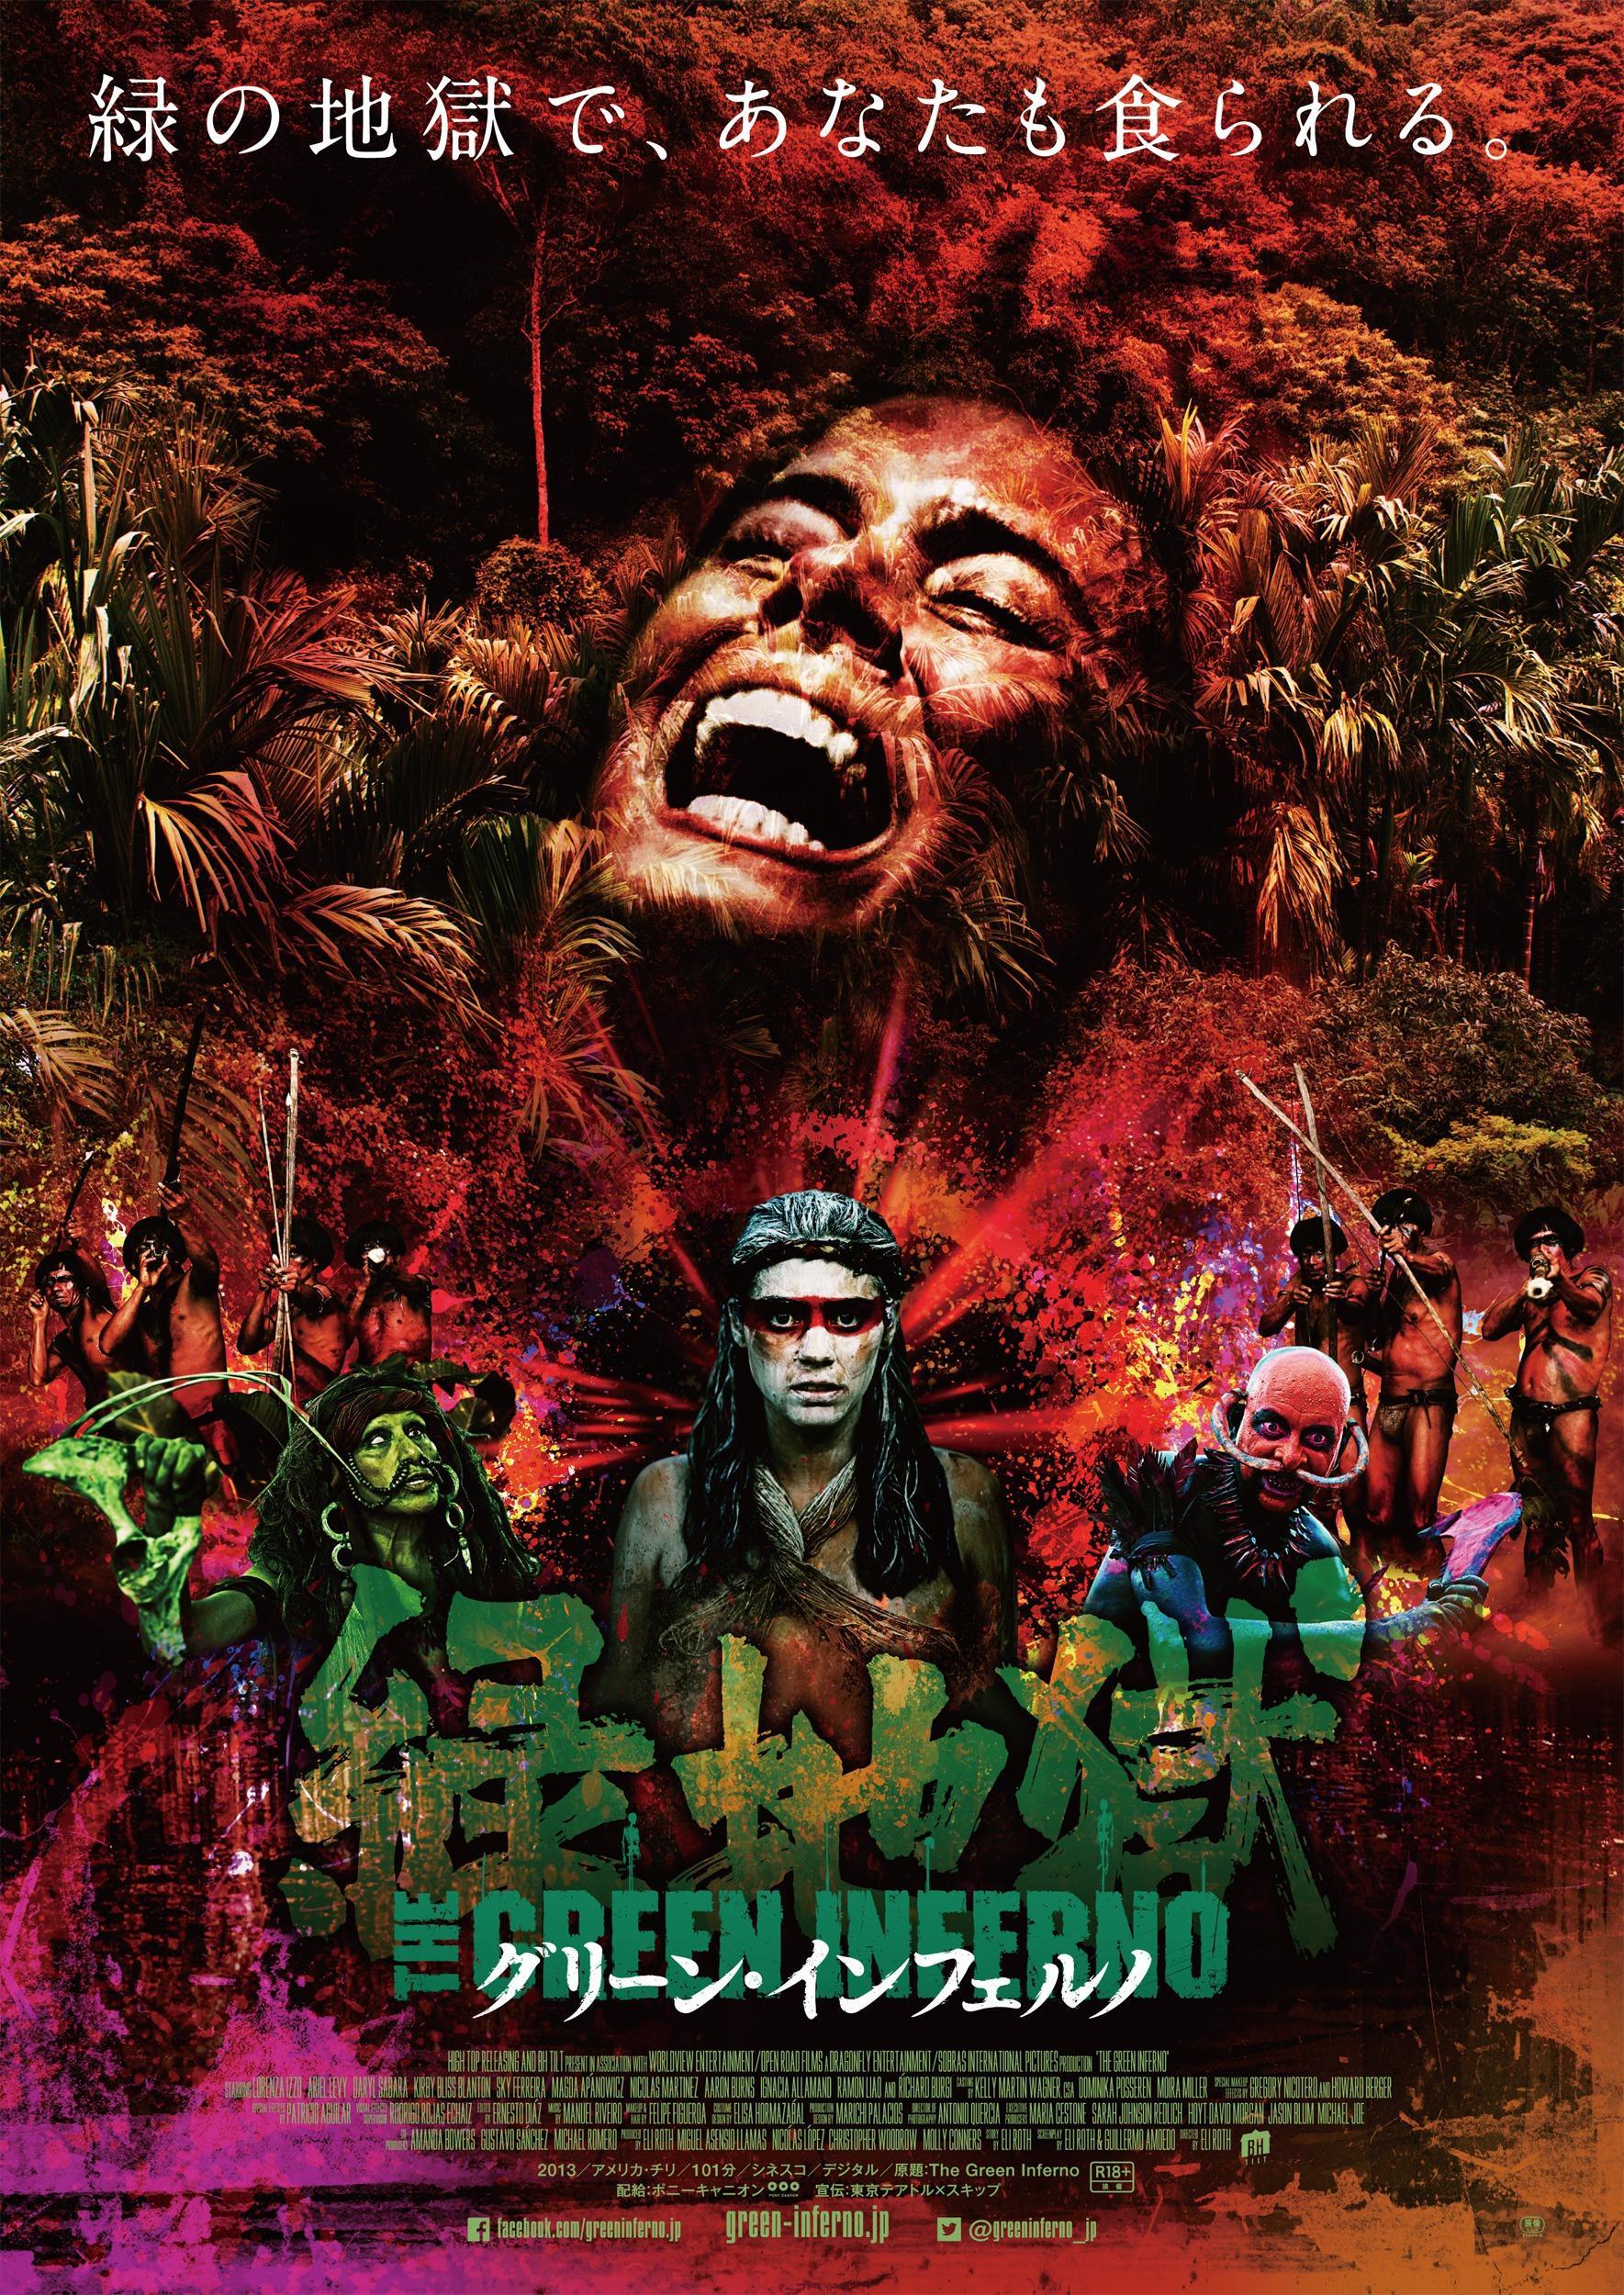 Постер фильма Зеленый ад | Green Inferno